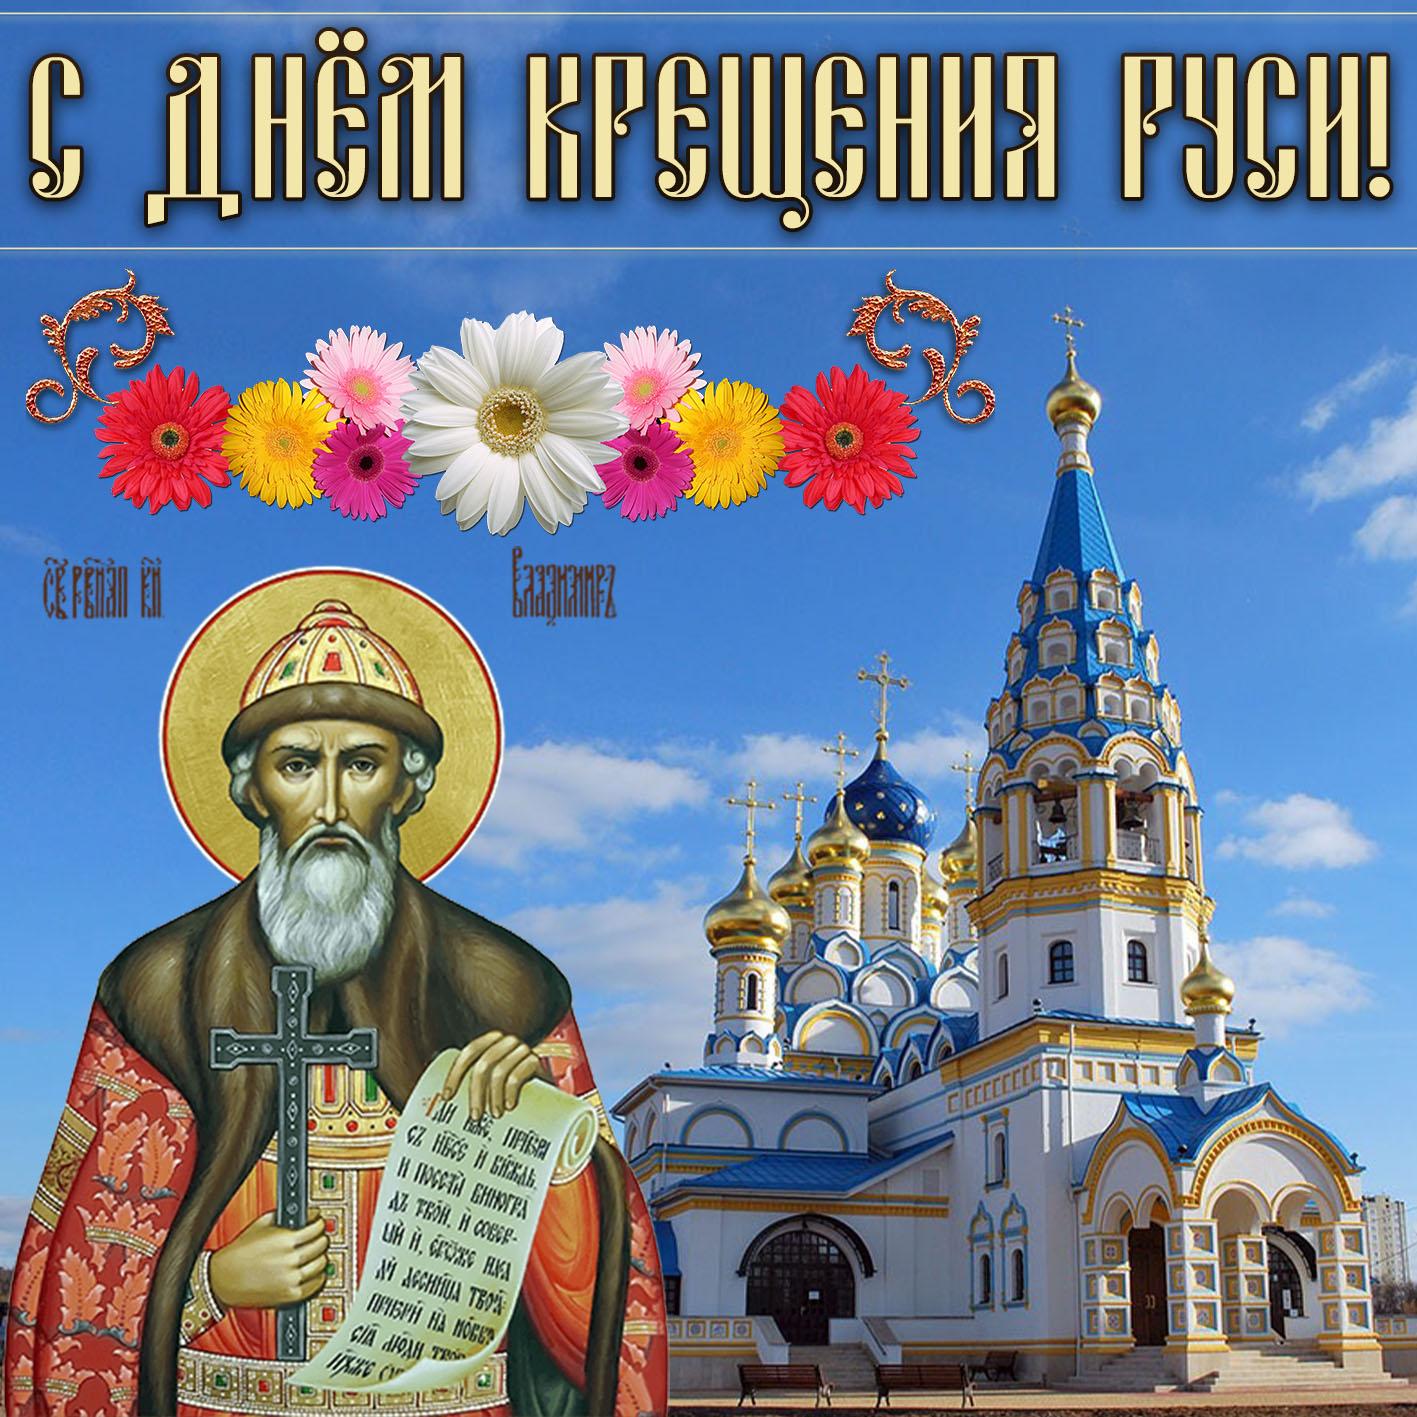 Фото Крещение Руси 28 июля 2022: новые красивые открытки и поздравления в стихах для православных 2